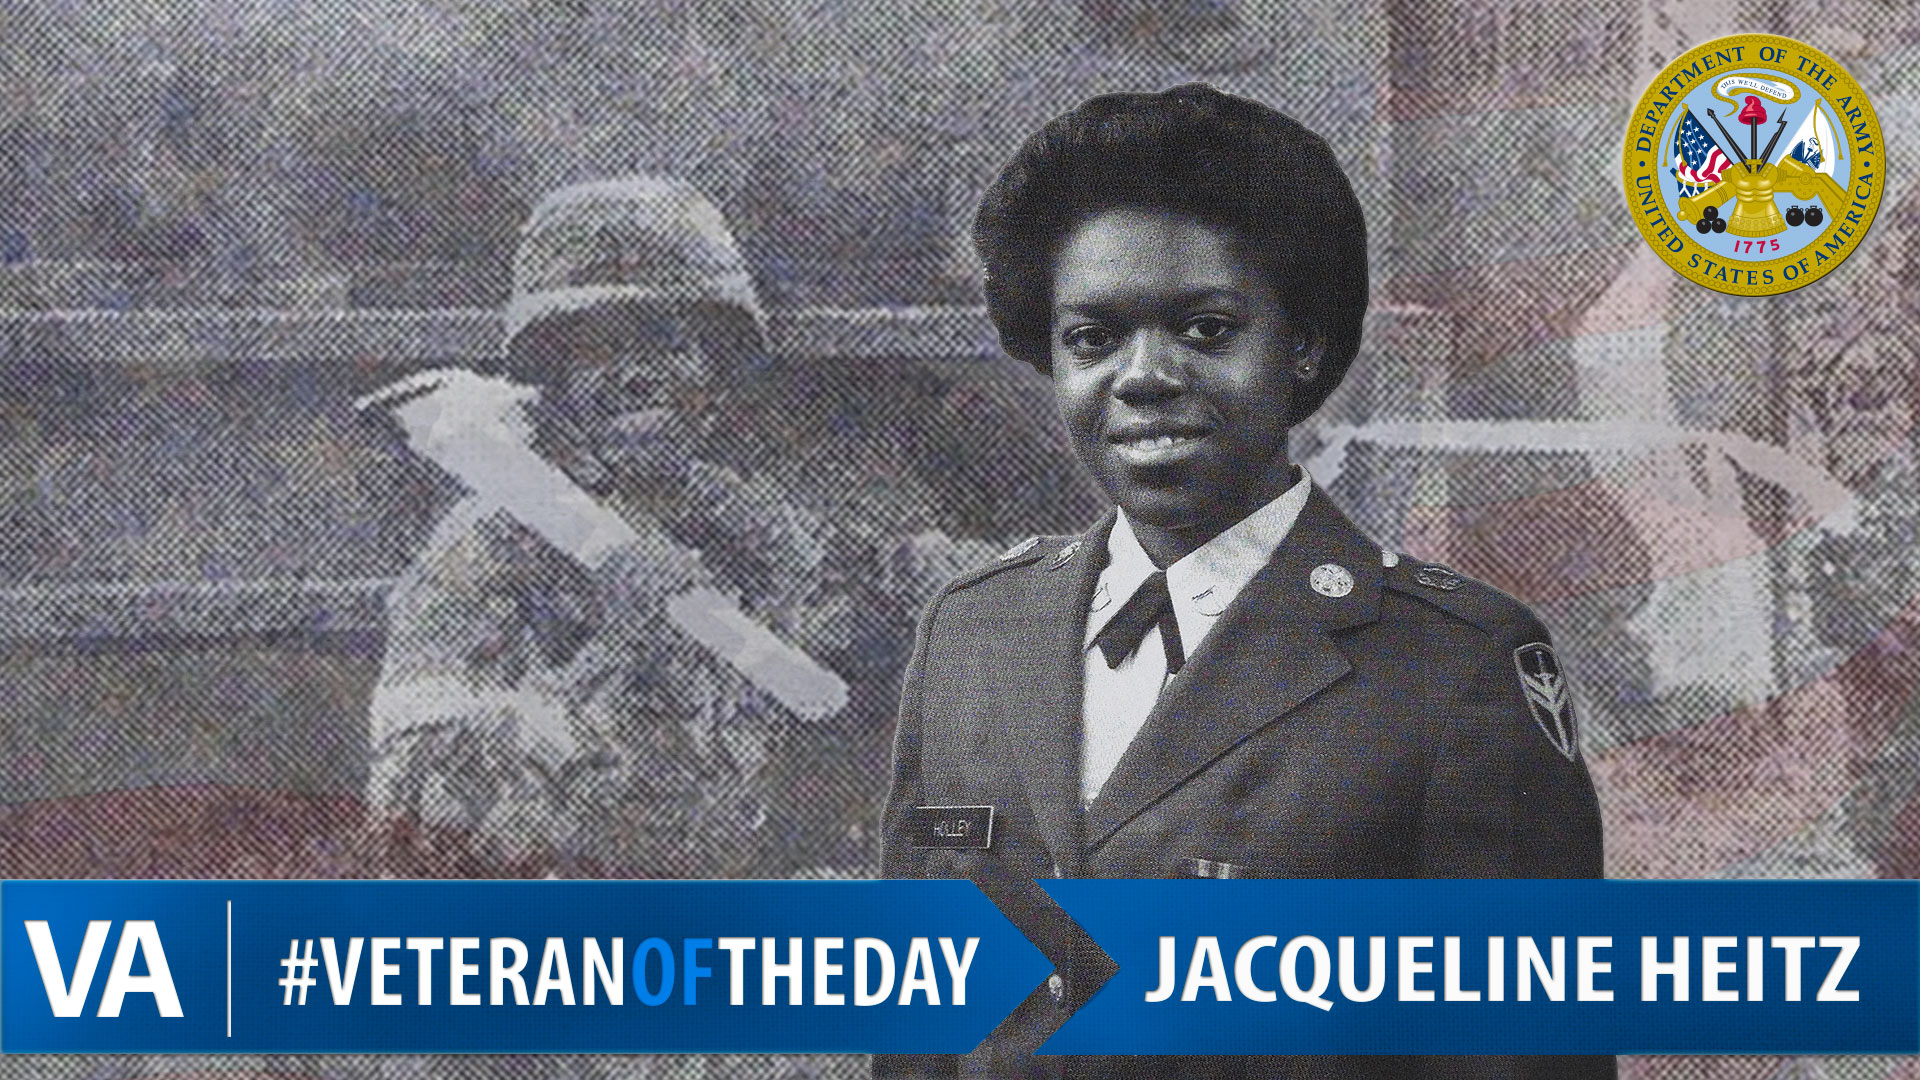 Jacqueline Heitz - Veteran of the Day